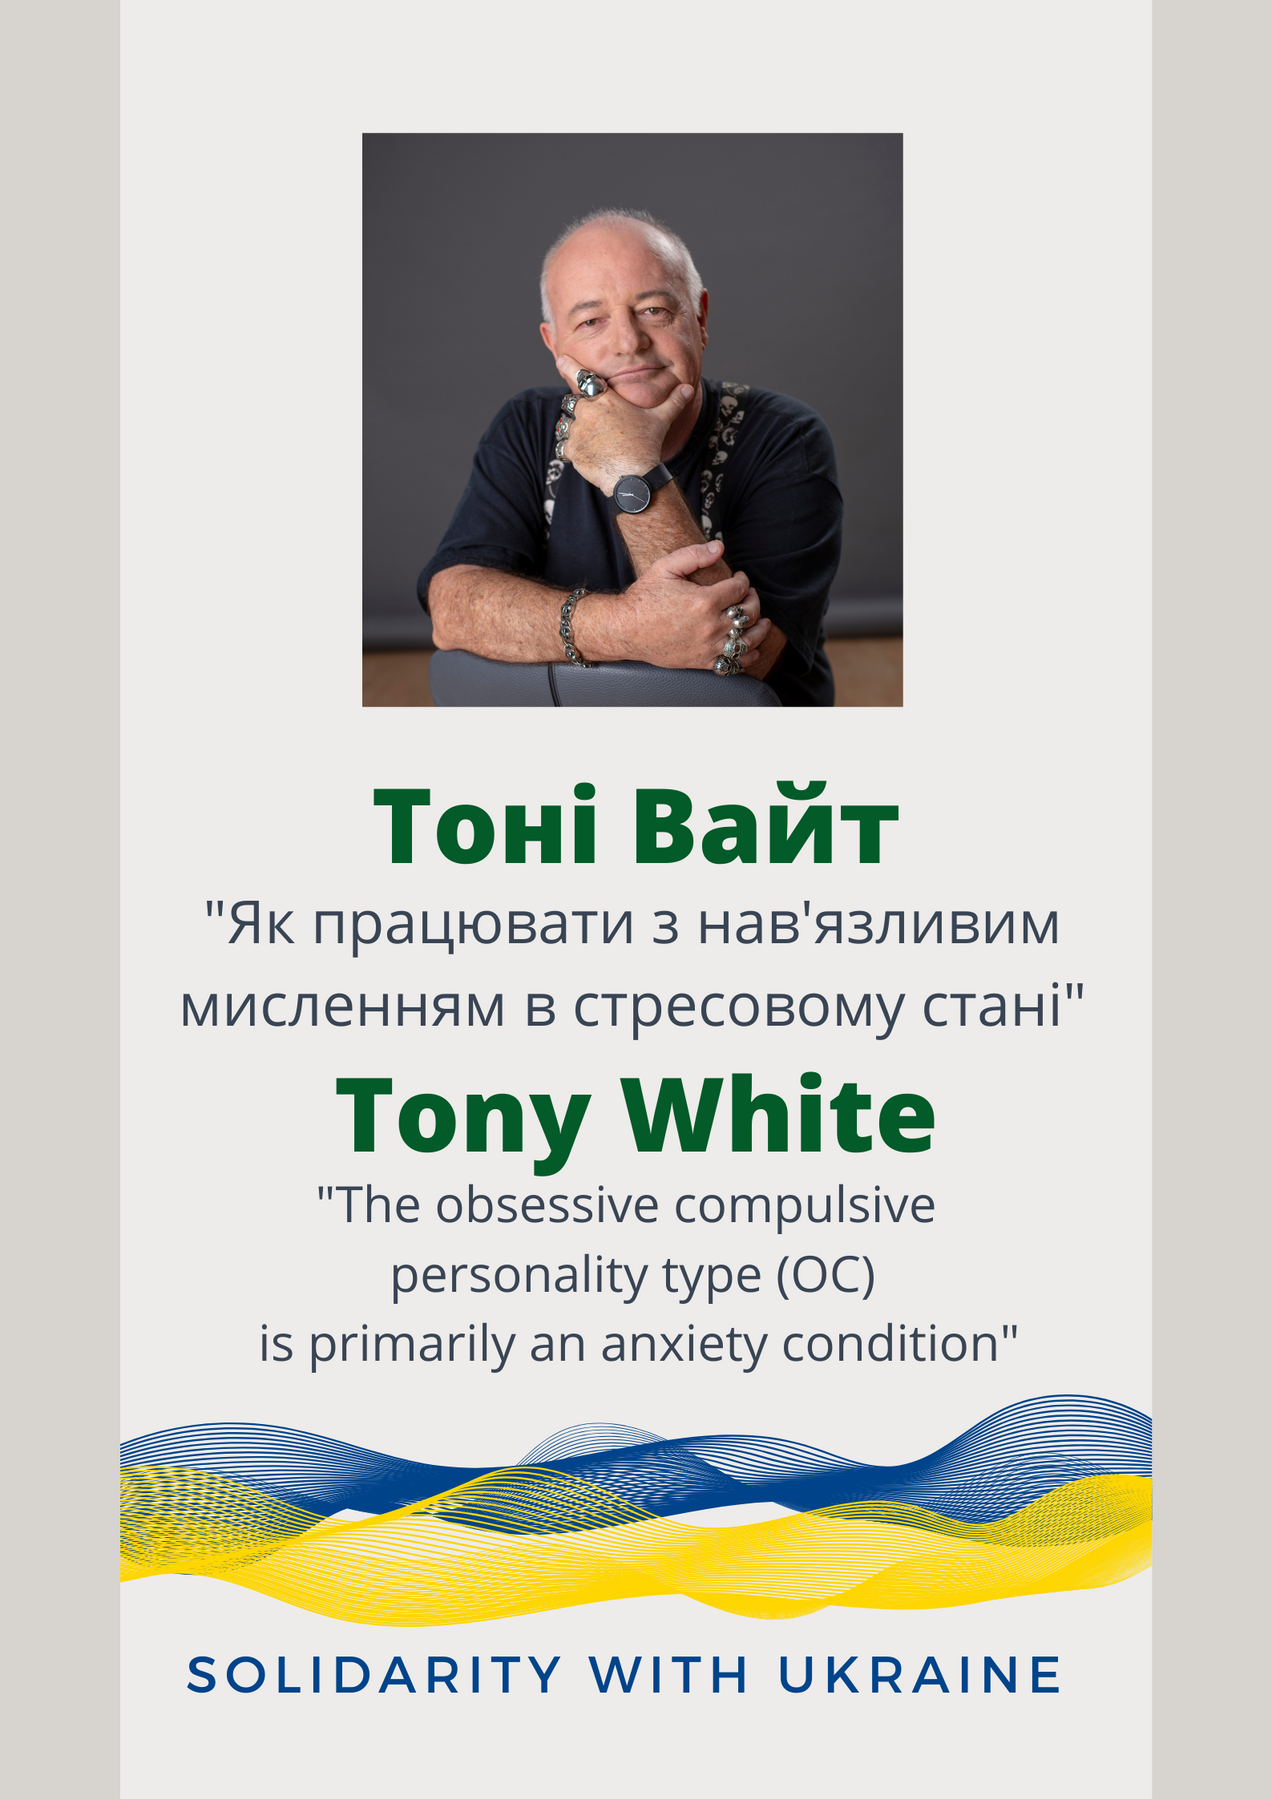 Тони Вайт, Австралия в поддержку украинских коллег. Воркшоп "Как работать с навязчивым мышлением в стрессовом состоянии". Обсессивно-компульсивное мышление и изменения настроения, как реакция на травму."